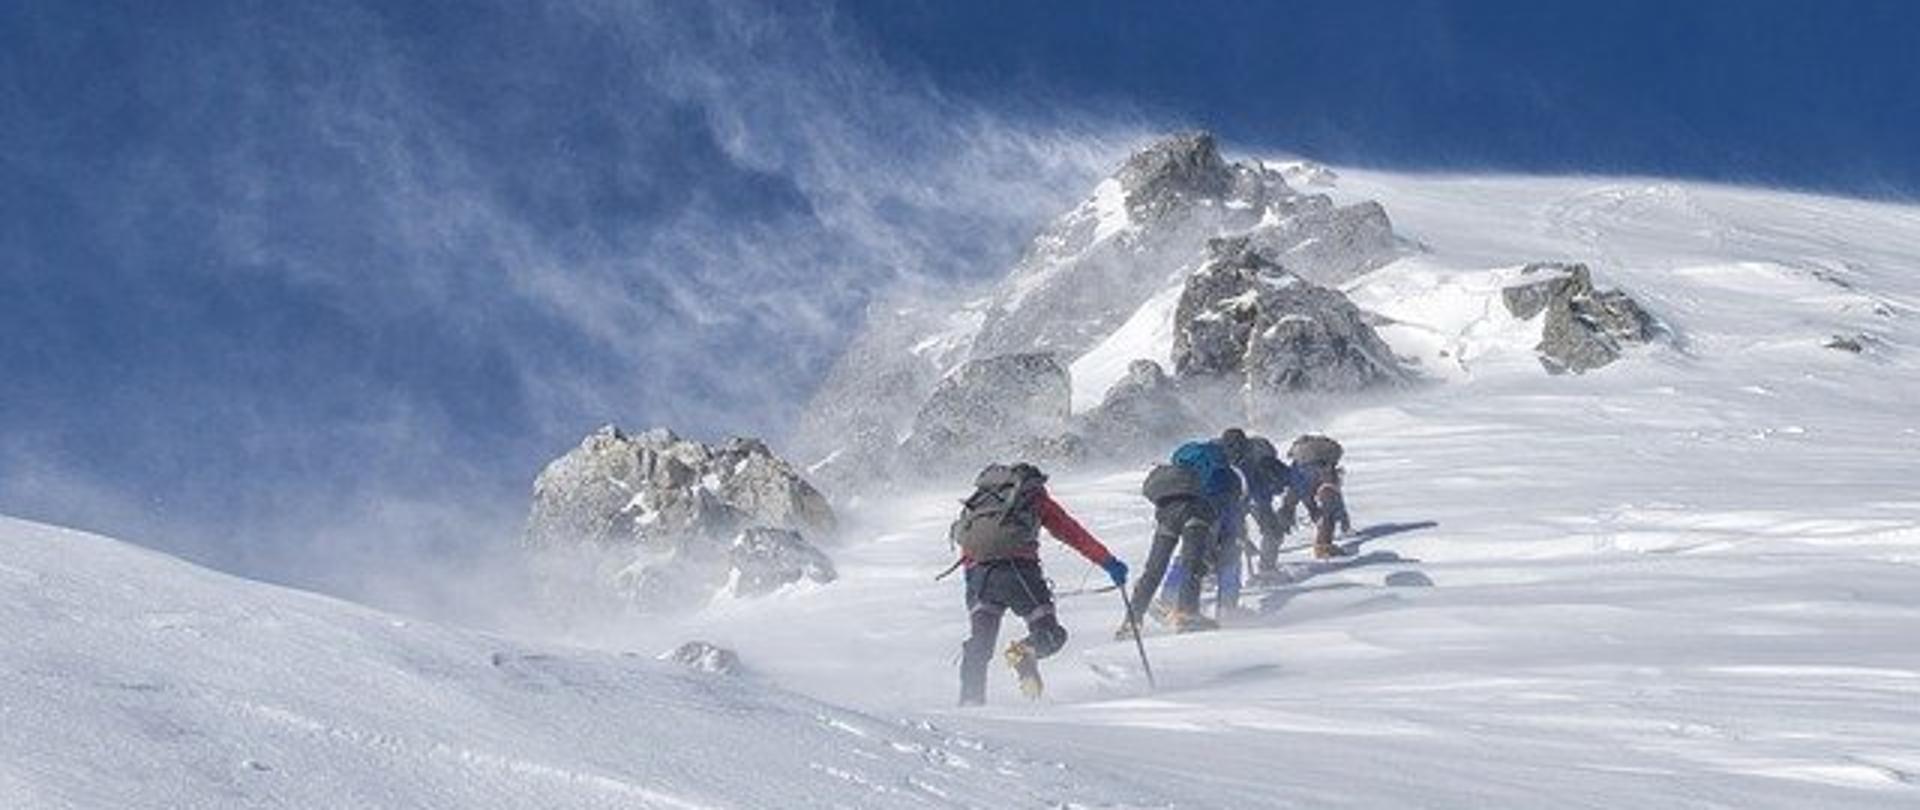 Górska wspinaczka zaśnieżonym szlakiem.